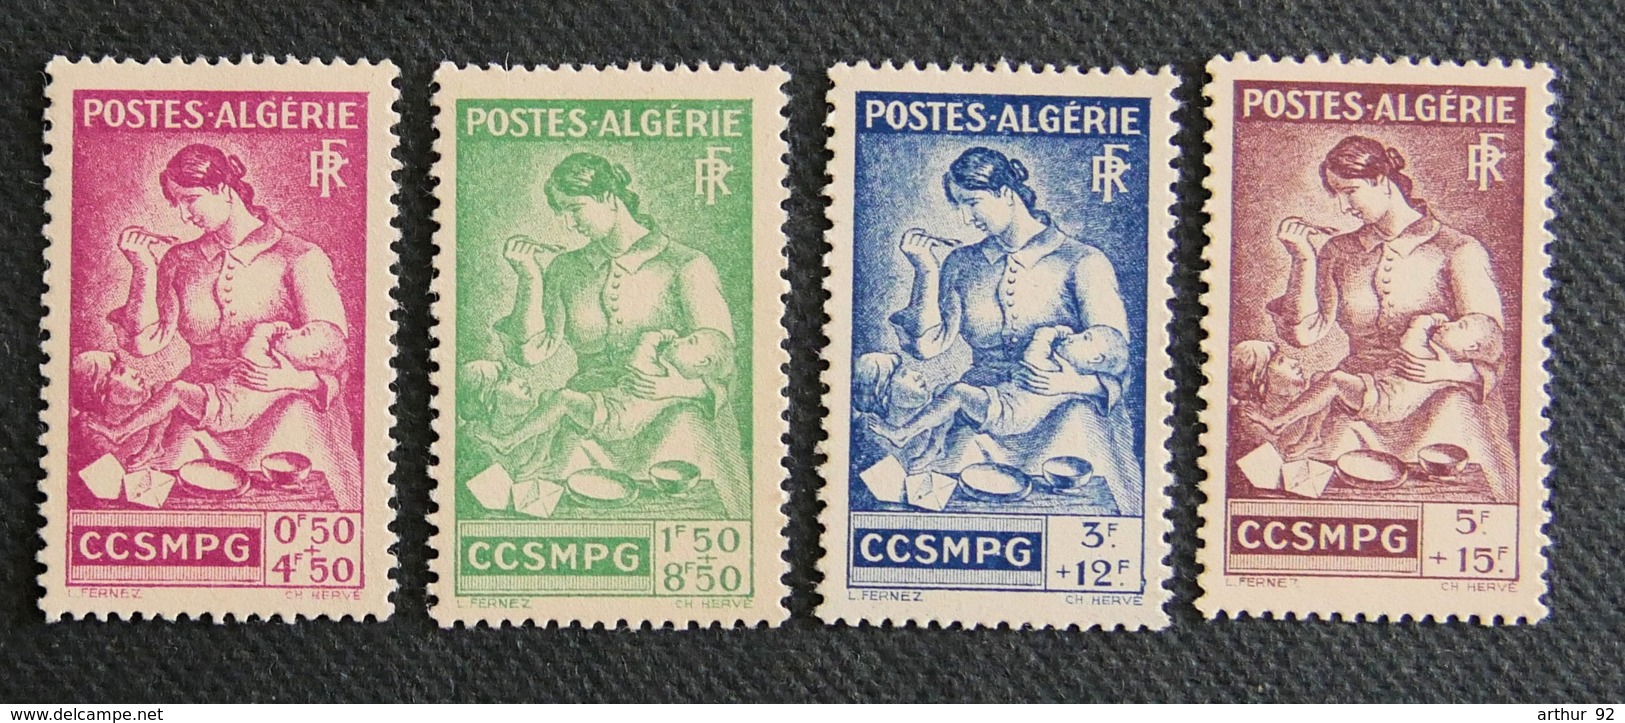 ALGERIE - 1944 - YT 205 à 208 ** - Algérie (1962-...)